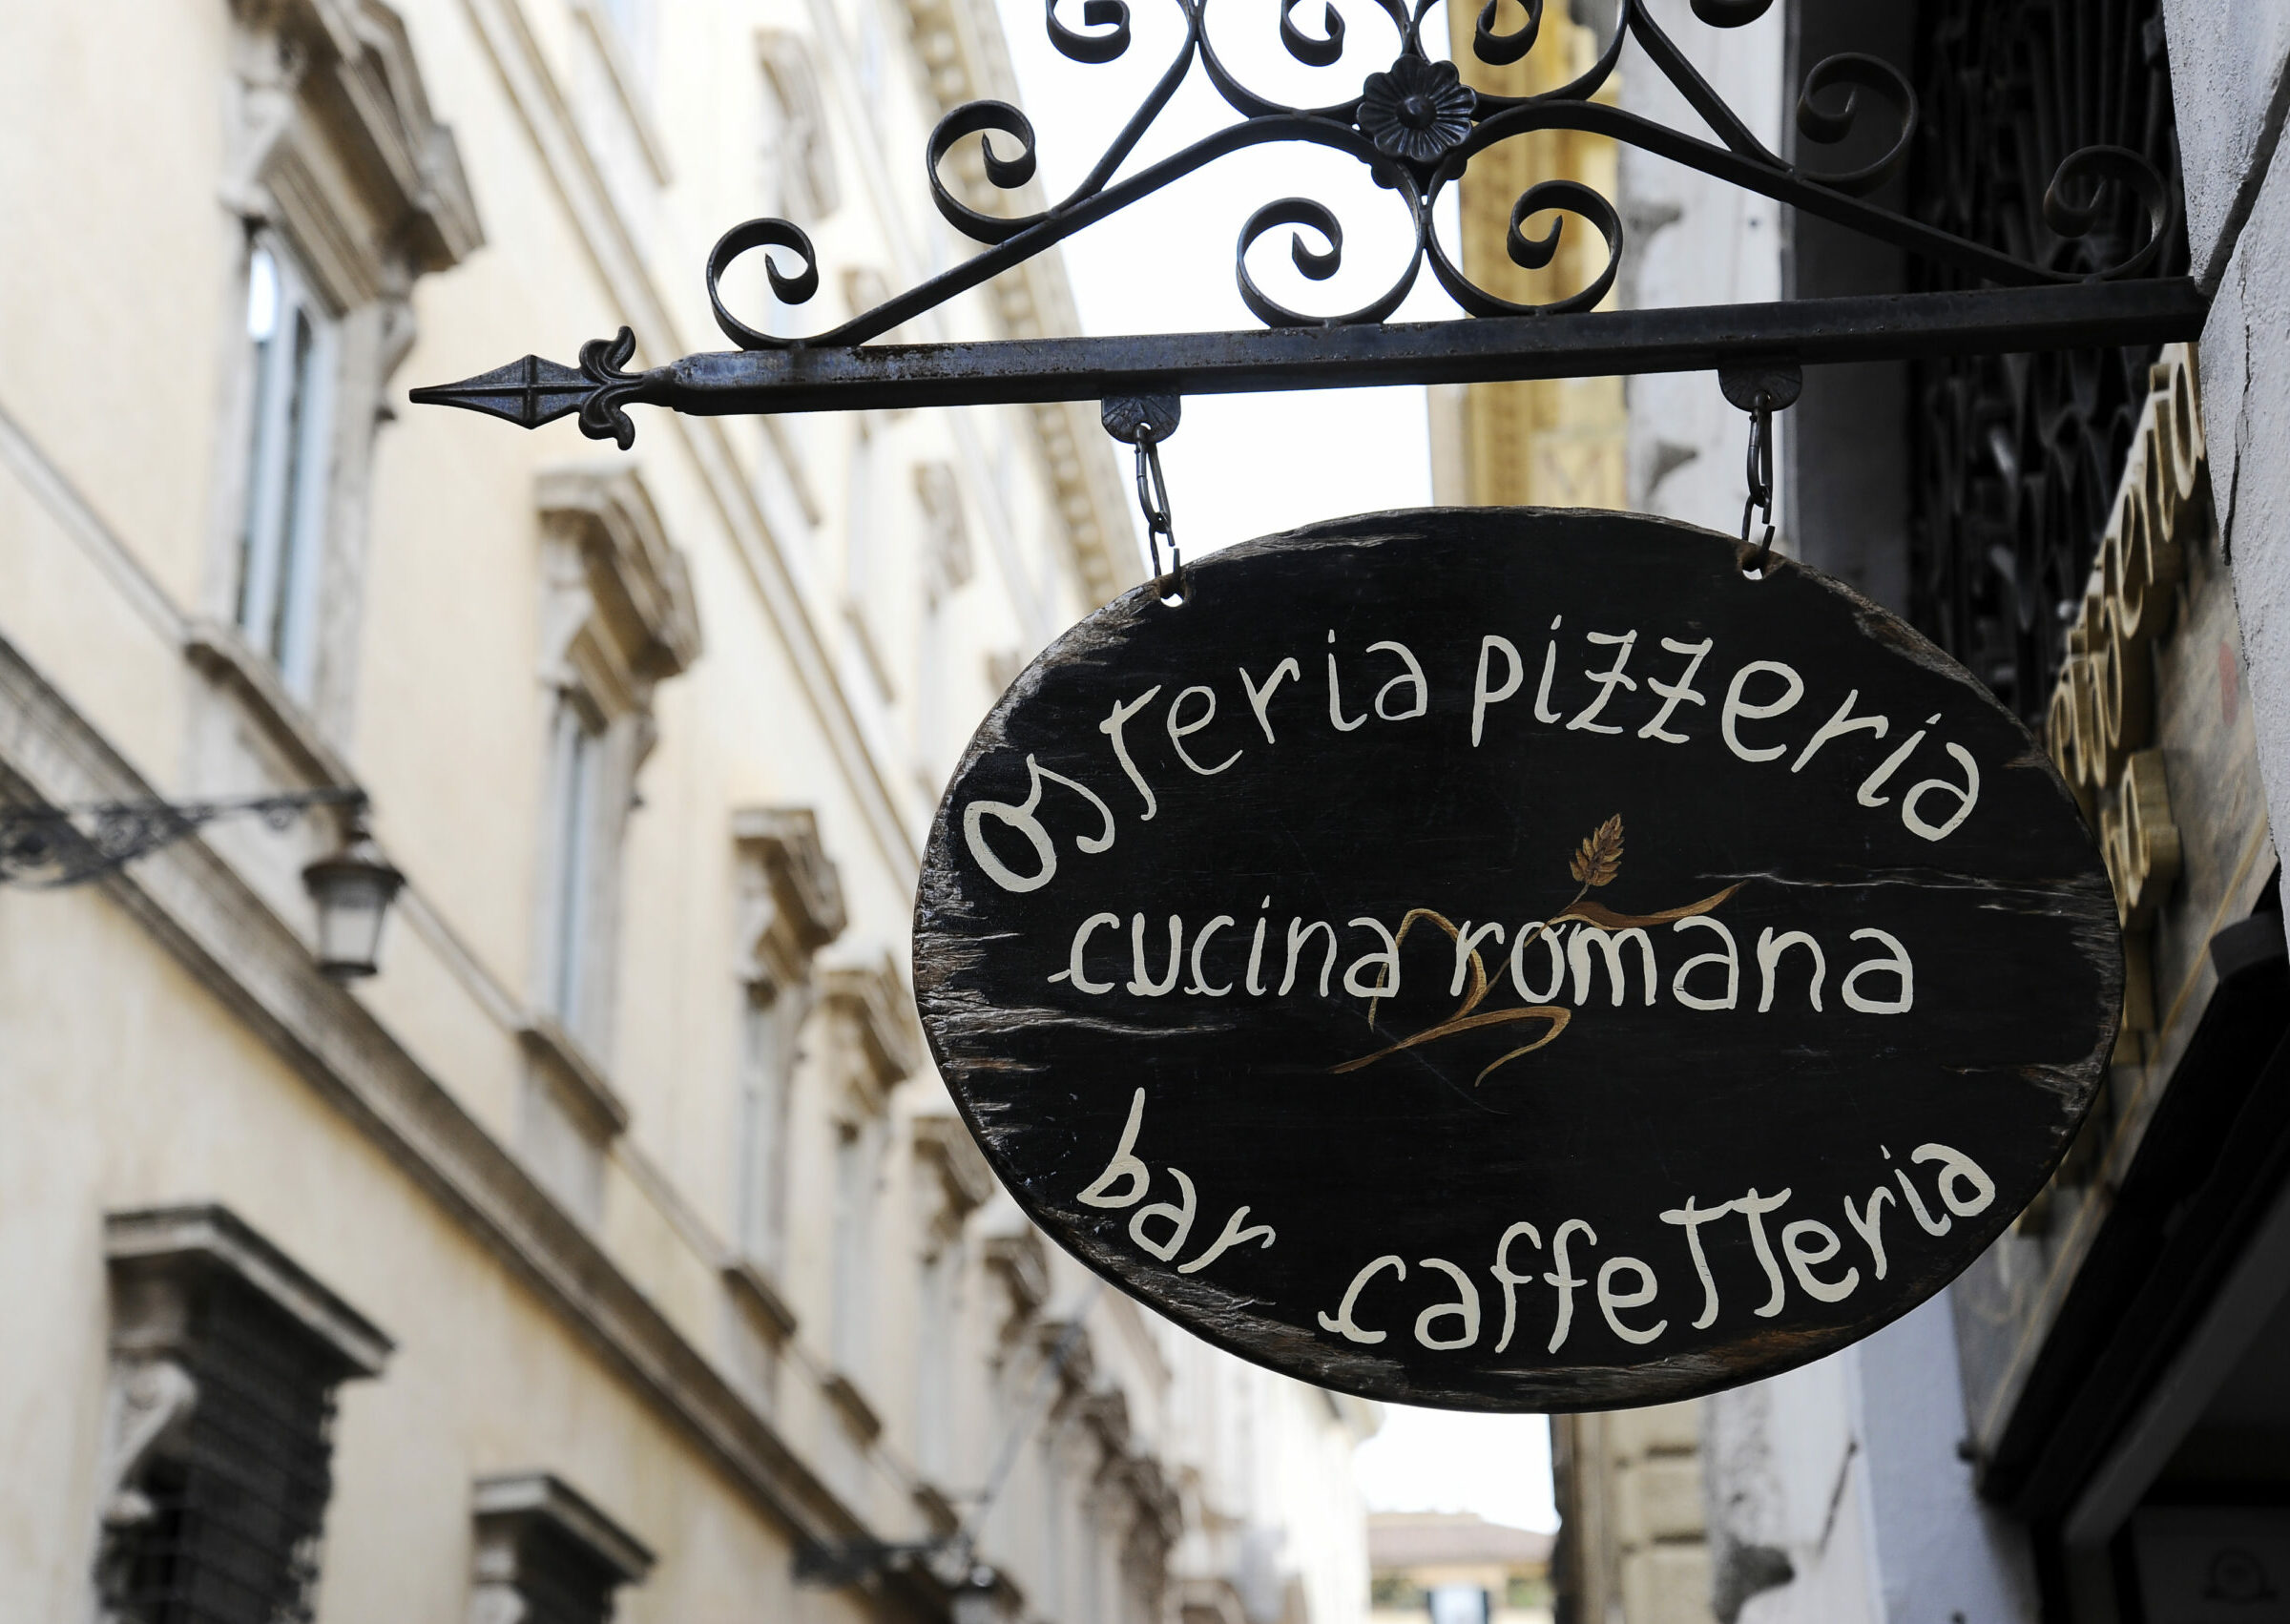 San Marco a la Veneziana, le chef-d'œuvre du café italien – Café San Marco